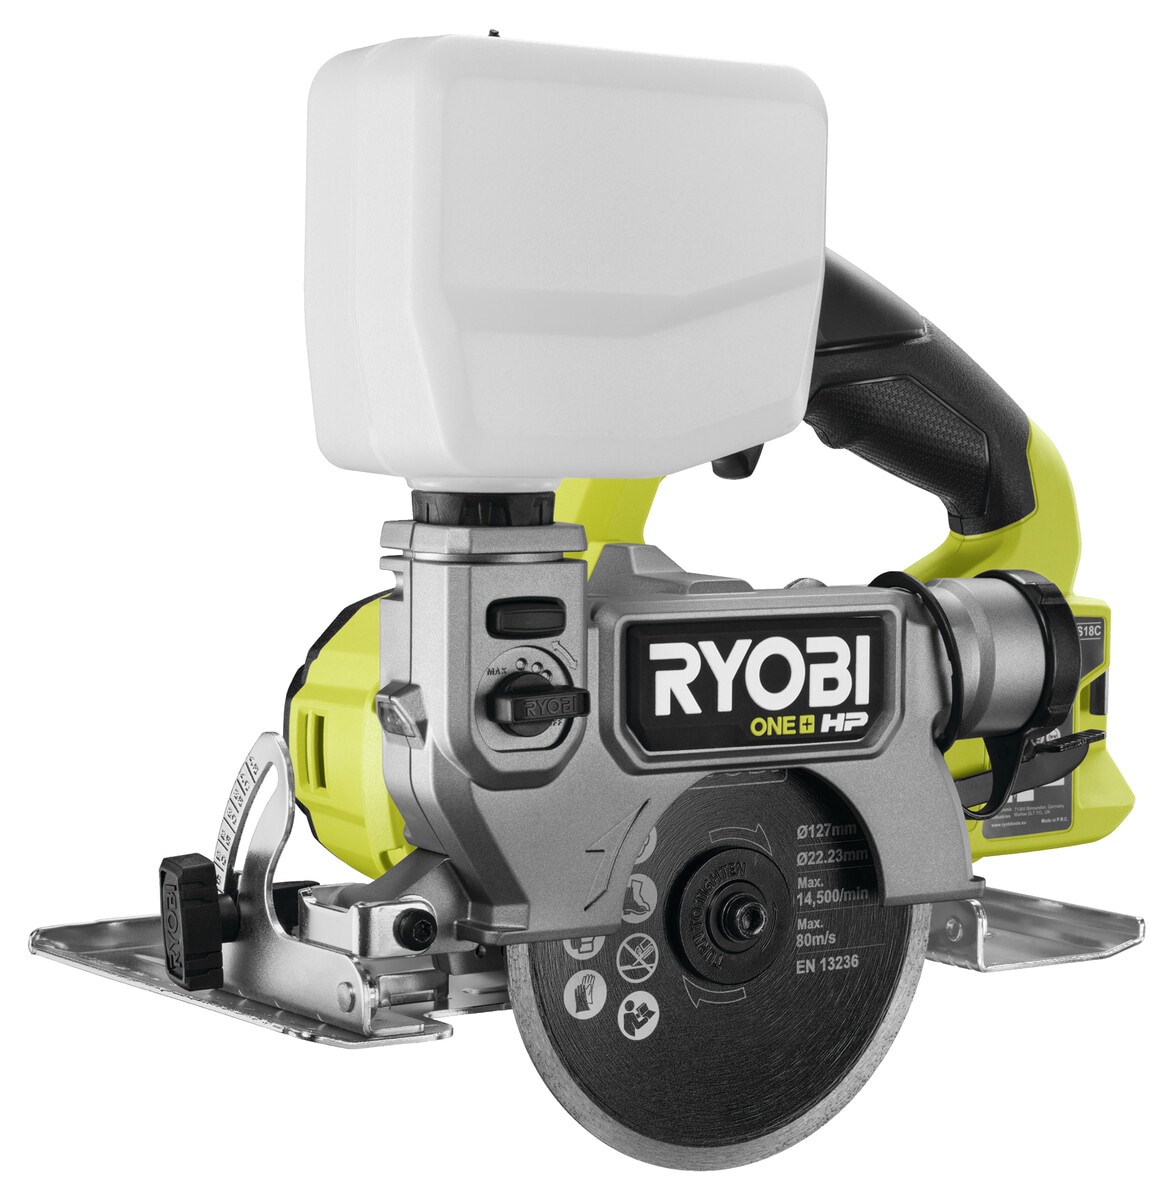 Ryobi RTS18C-0 vattenkyld kakelsåg 18 V One+ HP